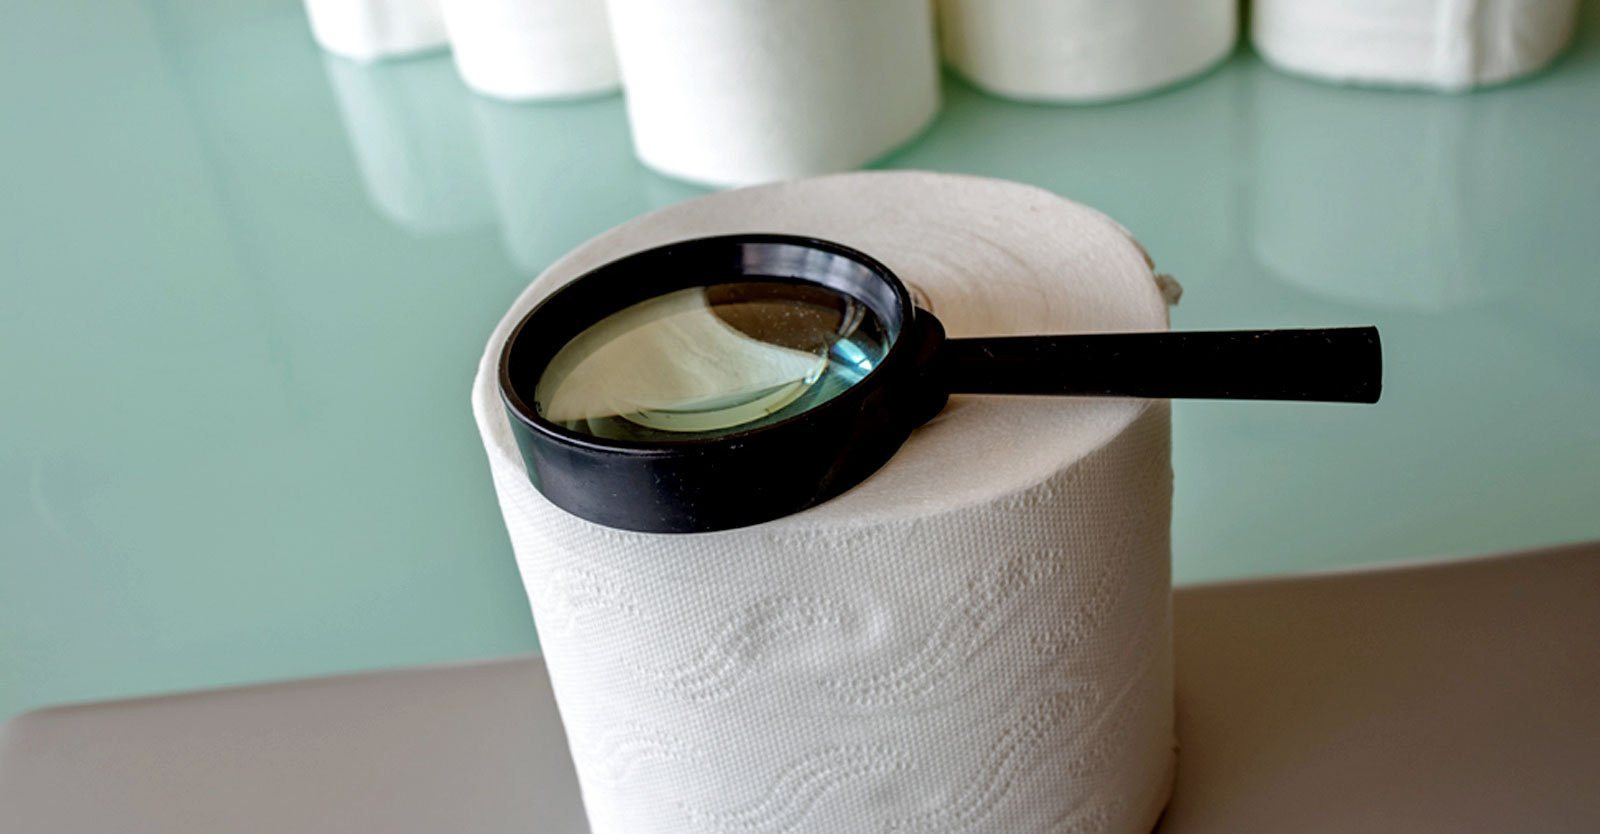 toilet-paper-toxic-pfas-chemicals-feature.jpeg